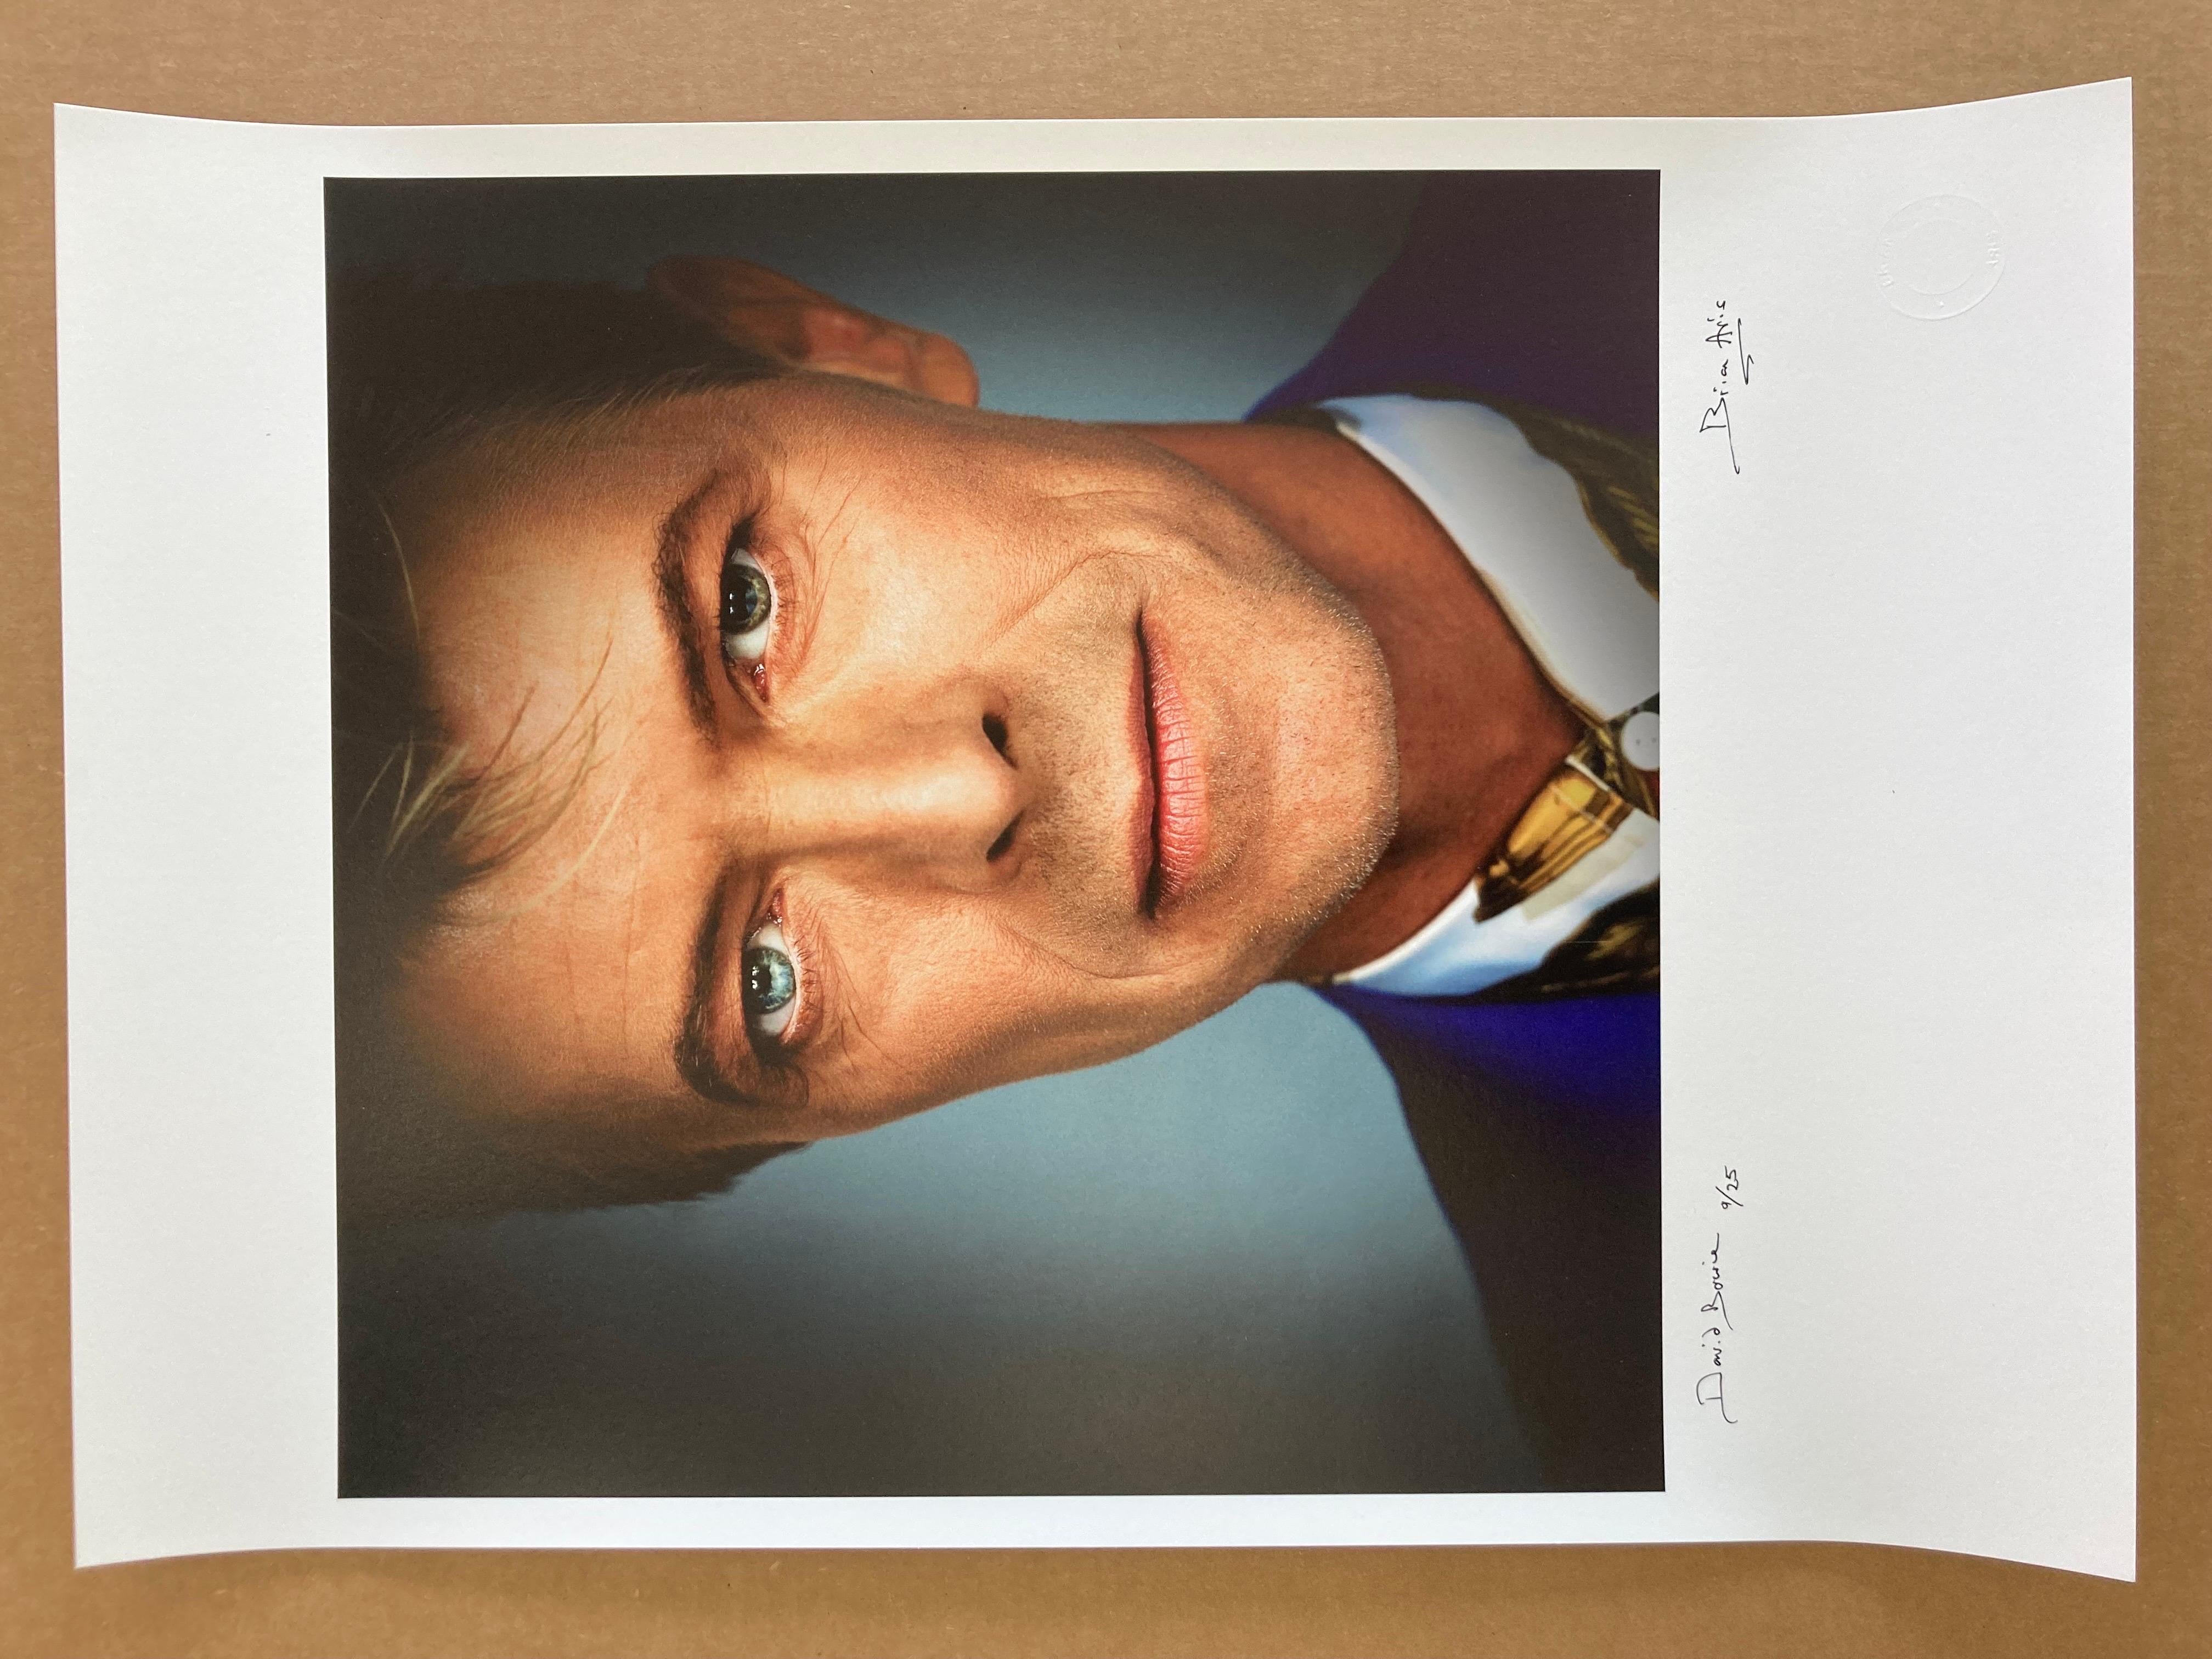 David Bowie – Photograph von Brian Aris